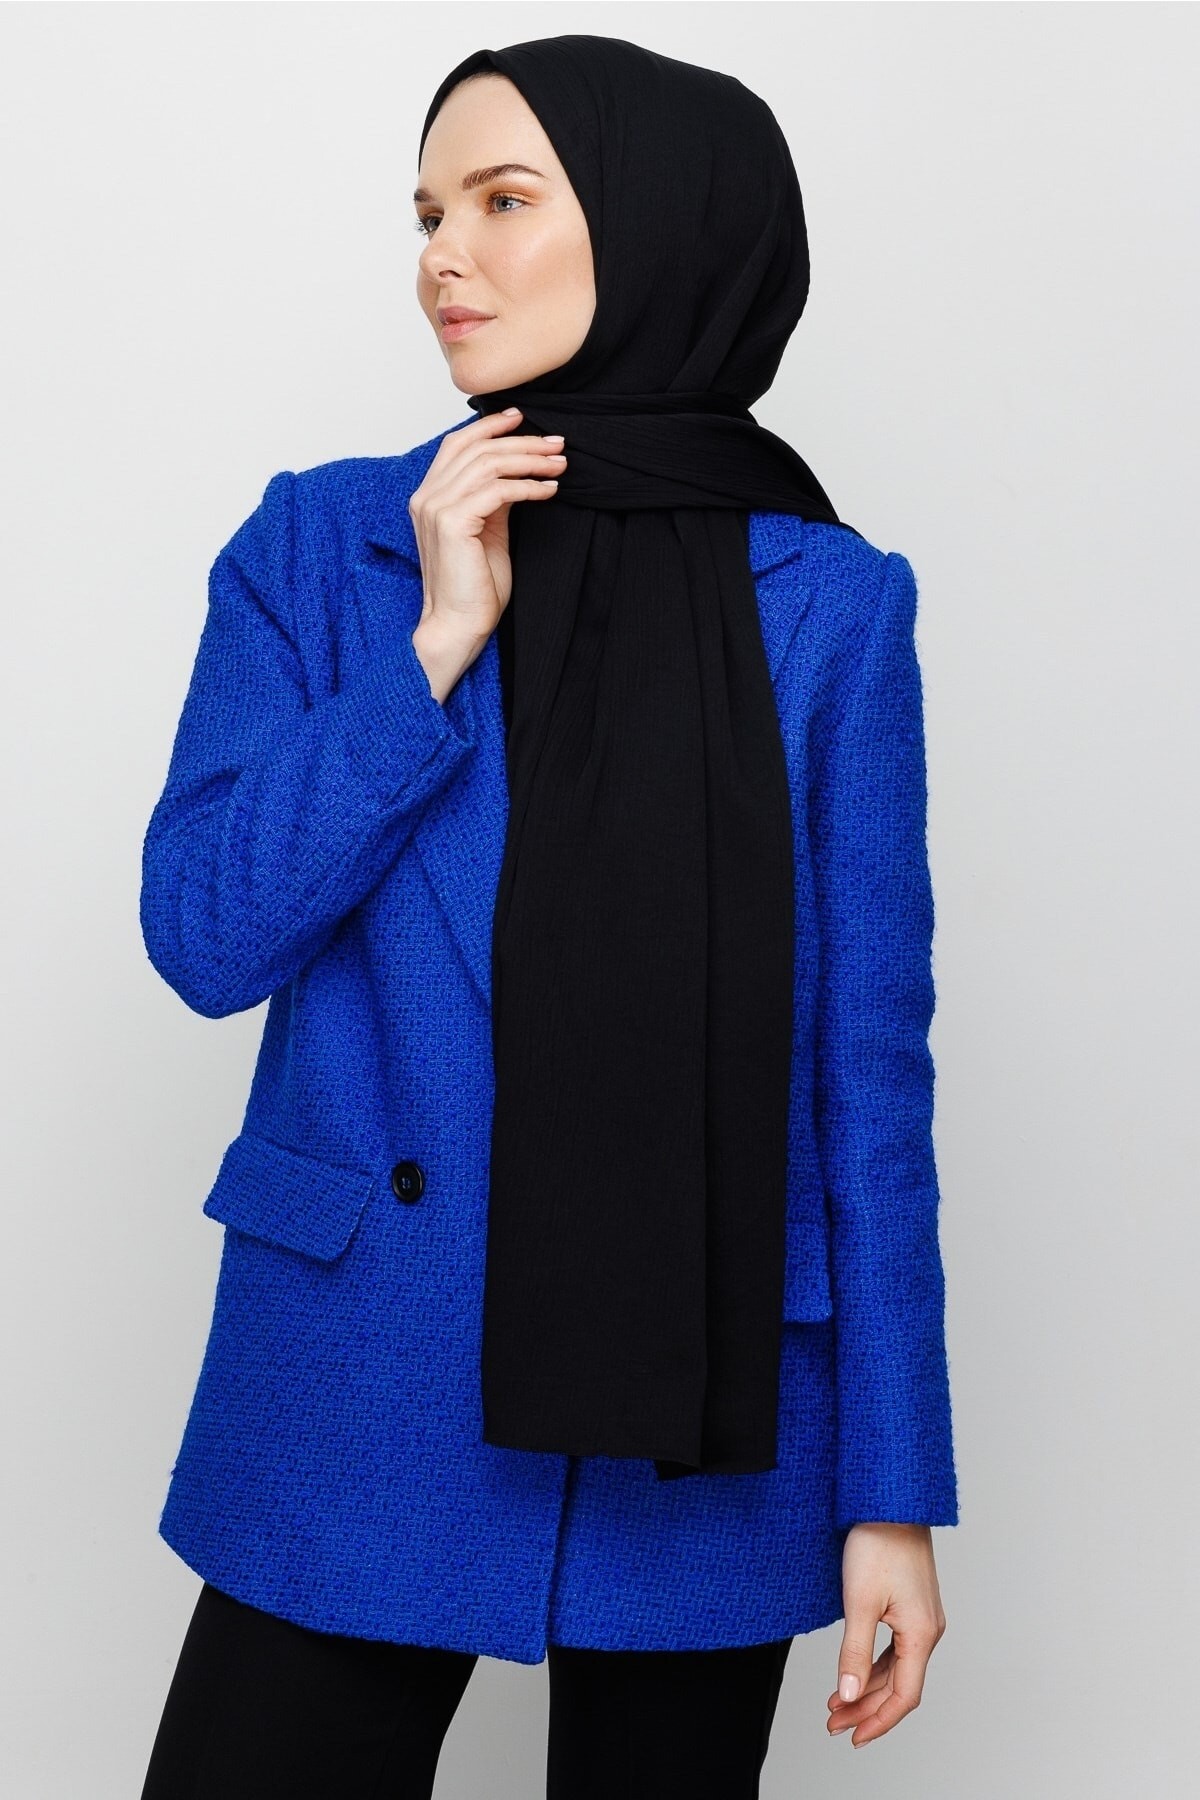 Crinkle Medina Seide Hijab